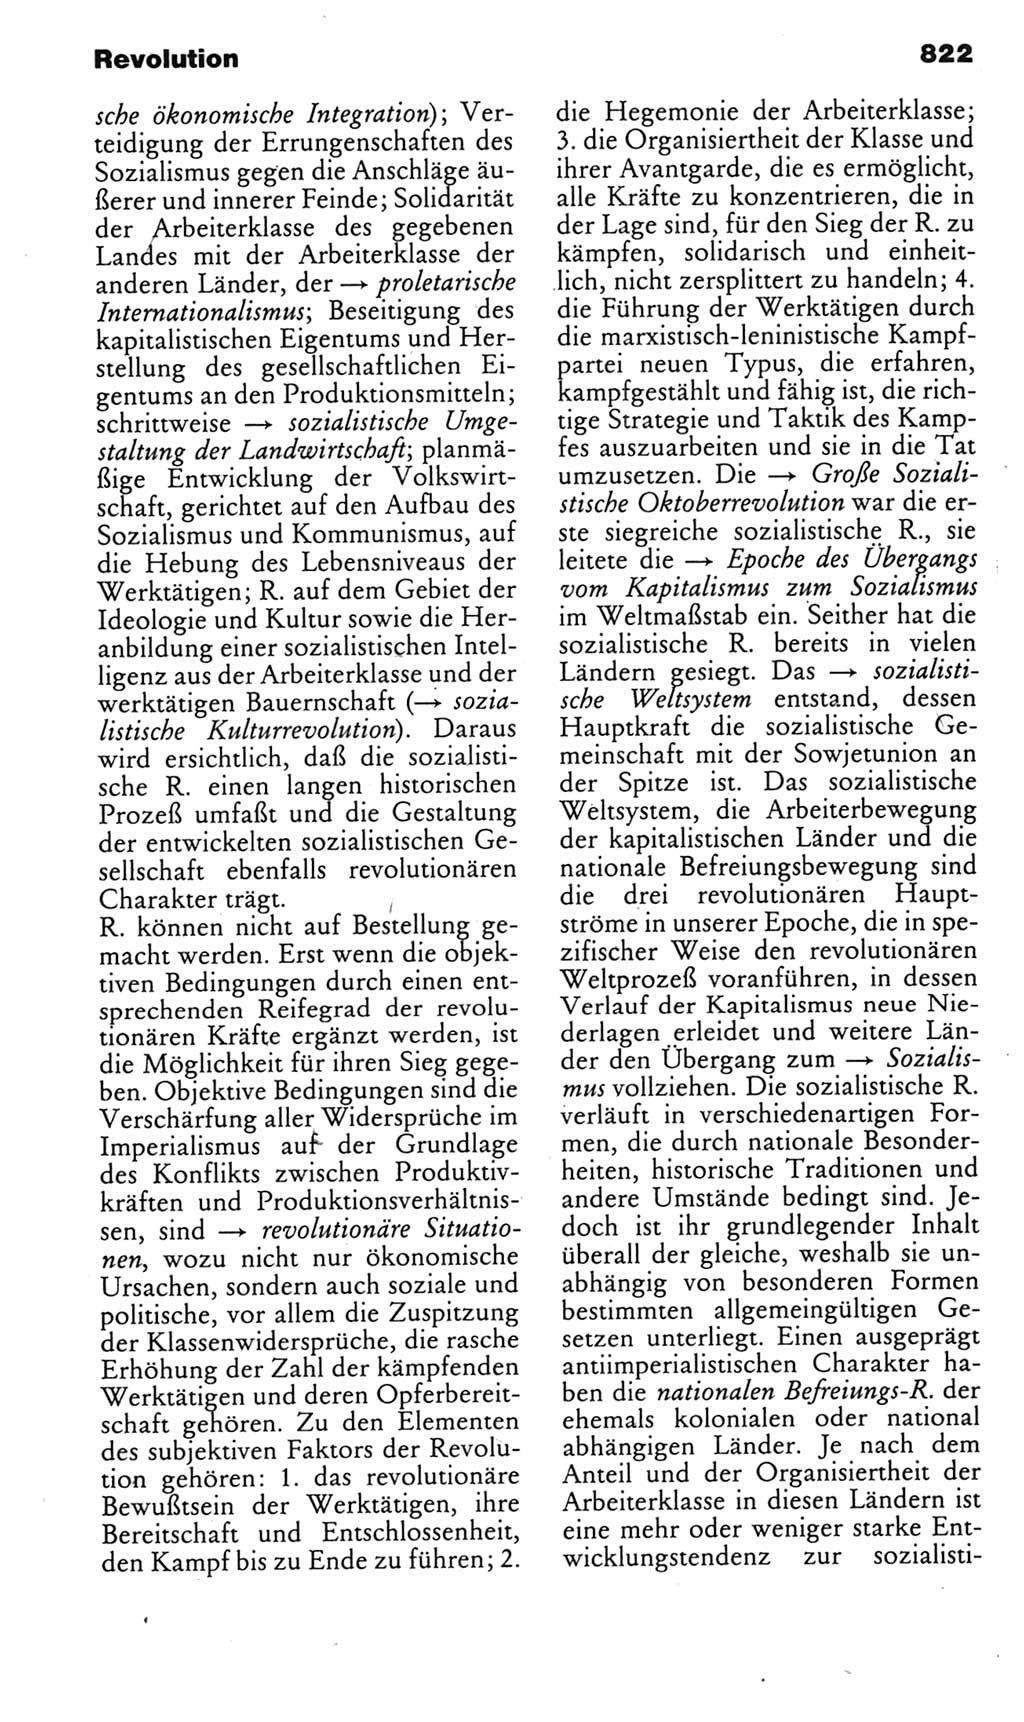 Kleines politisches Wörterbuch [Deutsche Demokratische Republik (DDR)] 1985, Seite 822 (Kl. pol. Wb. DDR 1985, S. 822)